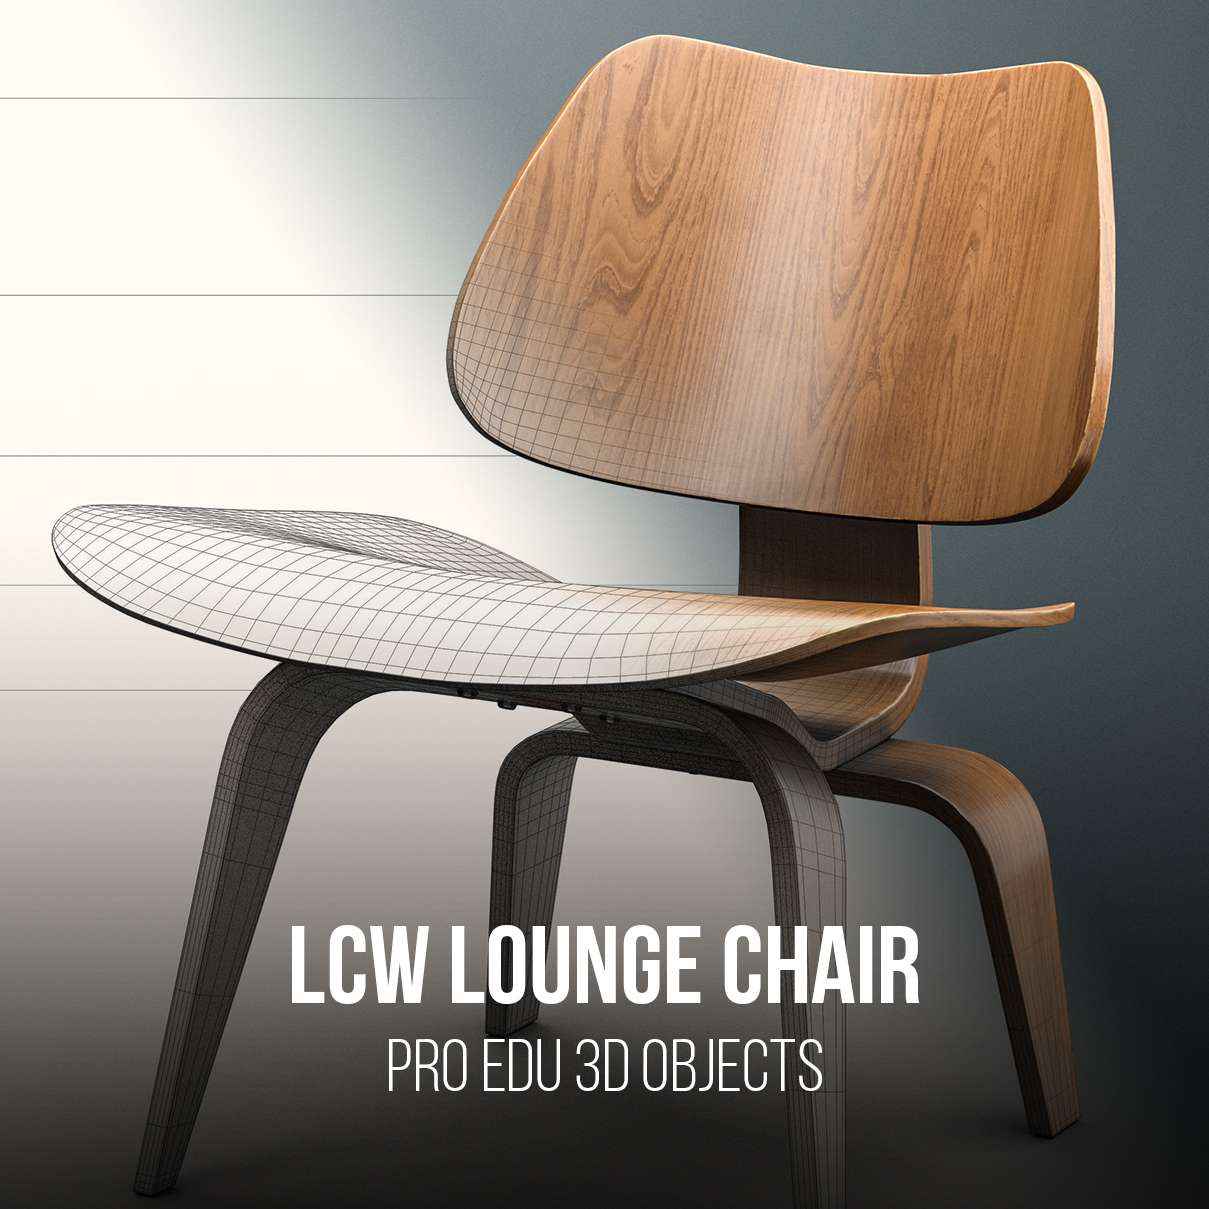 Eames Lounge Chair 3D Model Photoshop | C4D FBX OBJ CGI Asset  PRO EDU PRO EDU PRO EDU